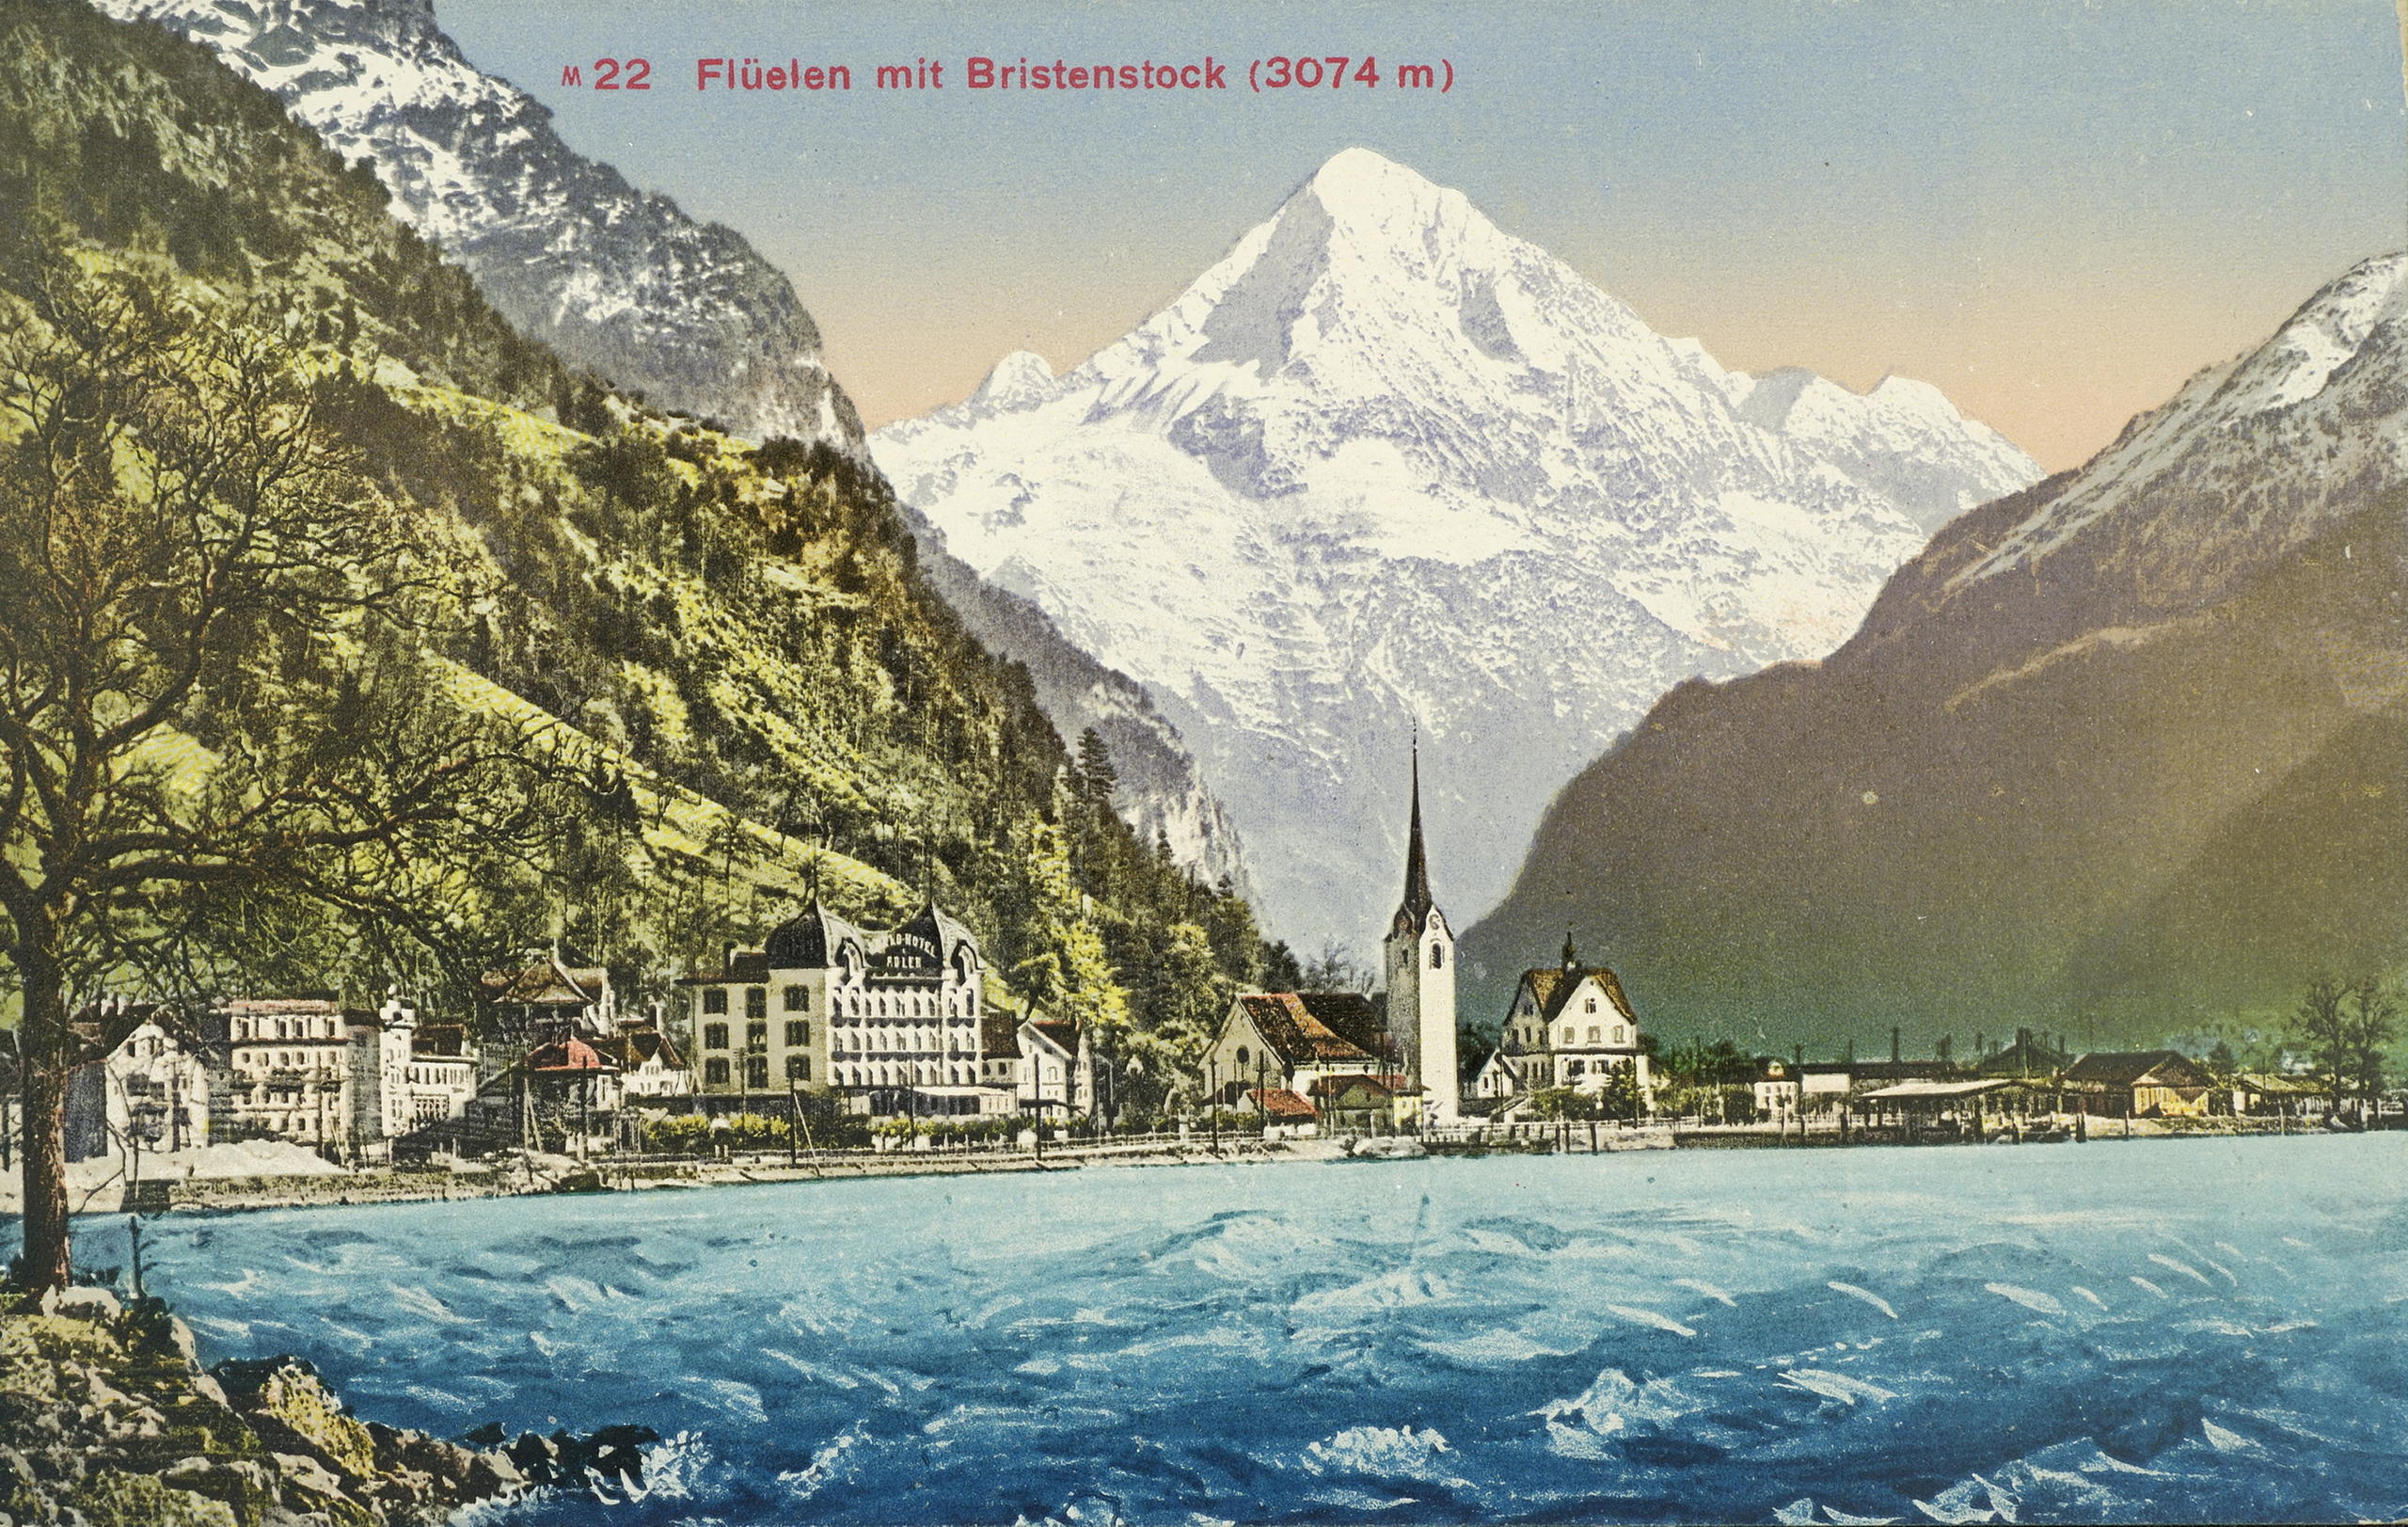 Imagen de 1900 de un lago y montañas suizos.